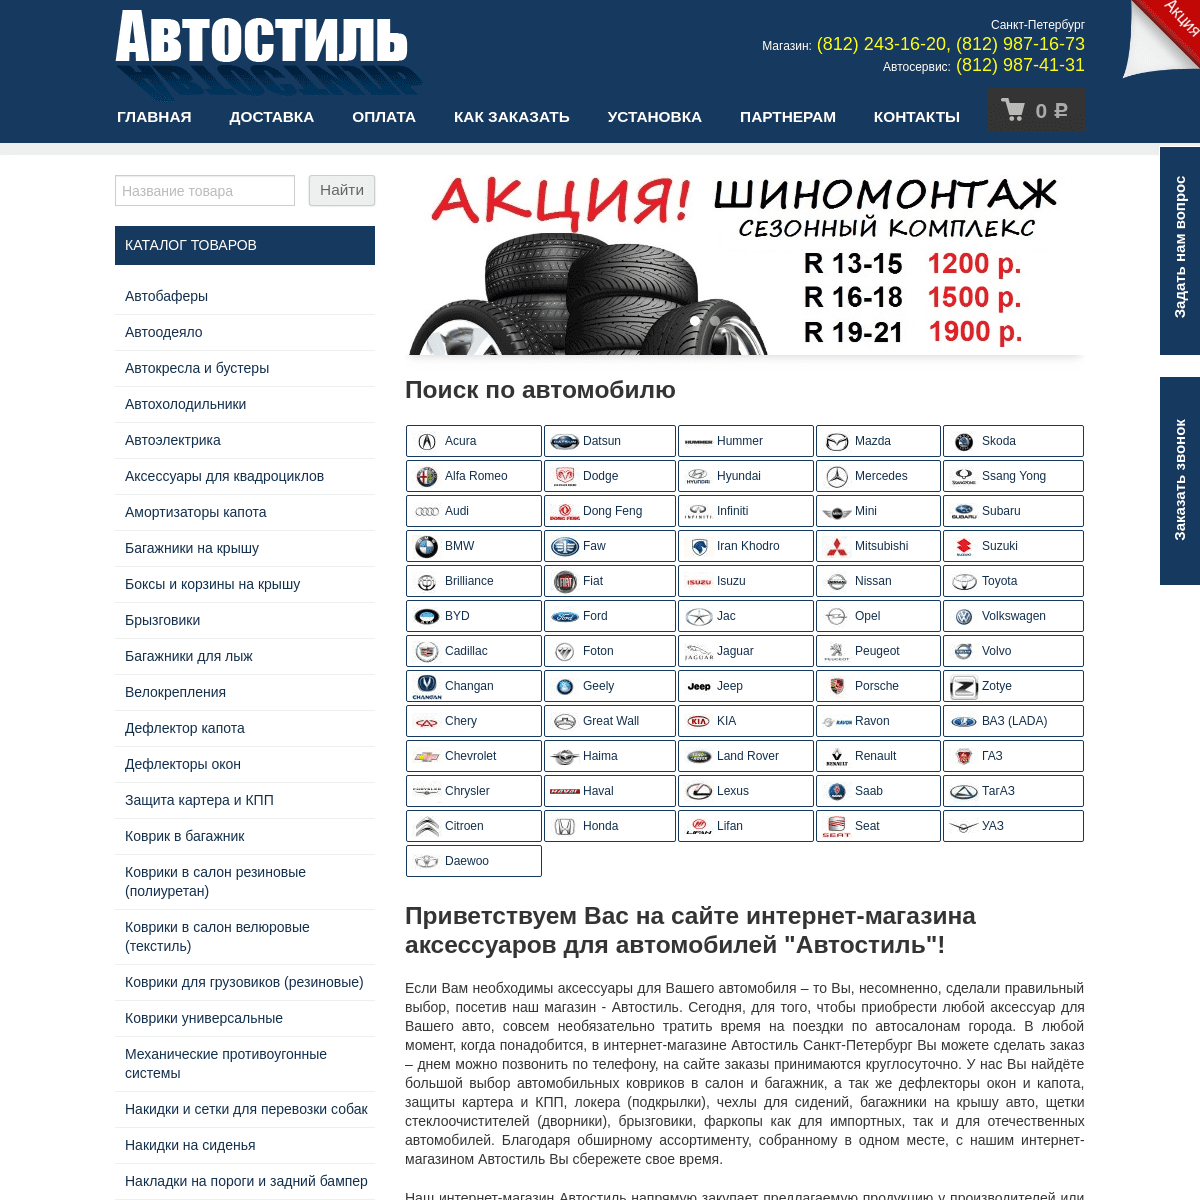 A complete backup of avtostil-spb.ru